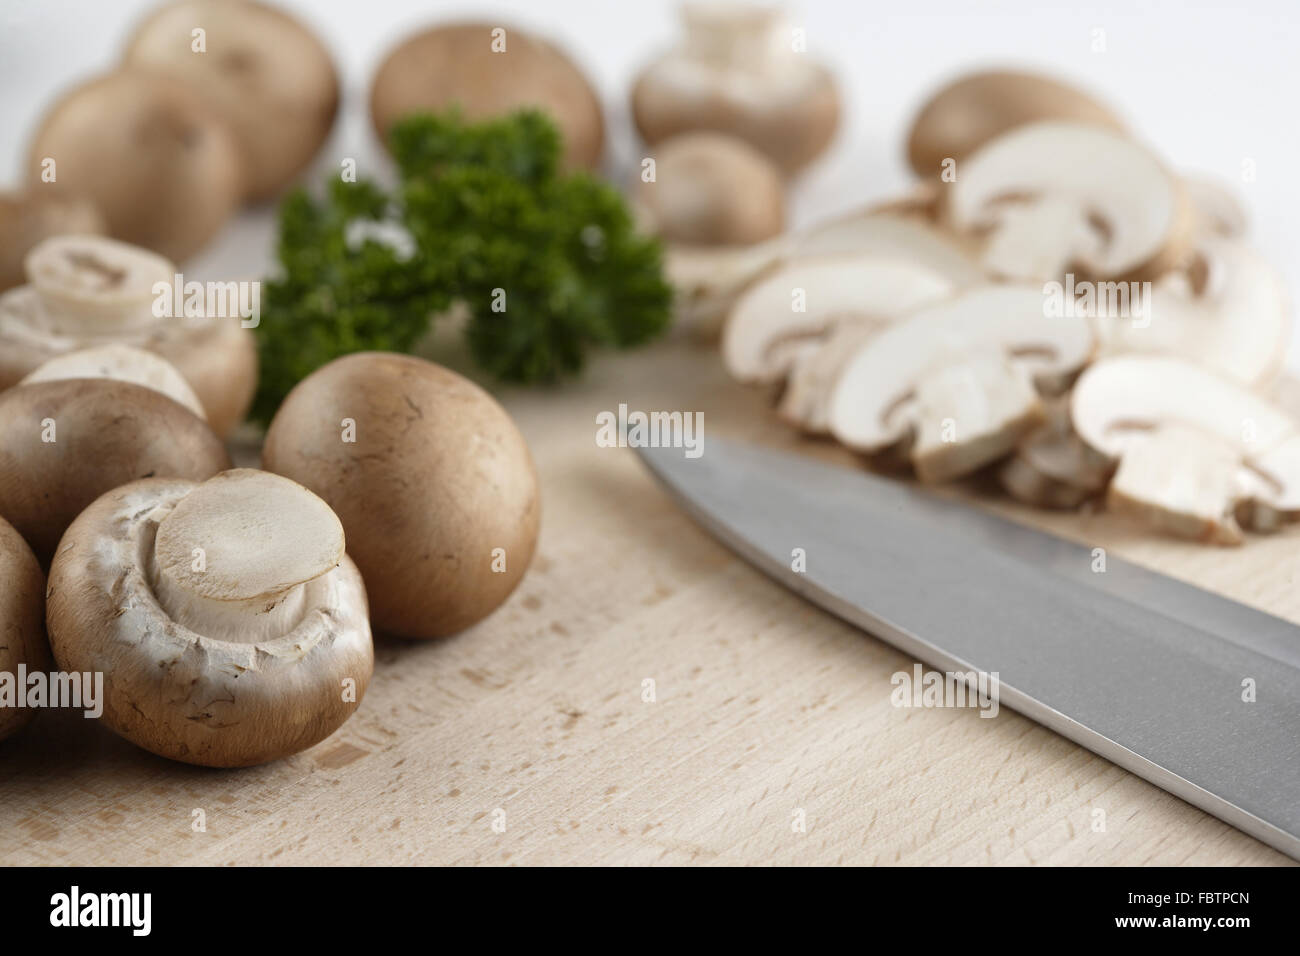 Les champignons, les champignons Banque D'Images